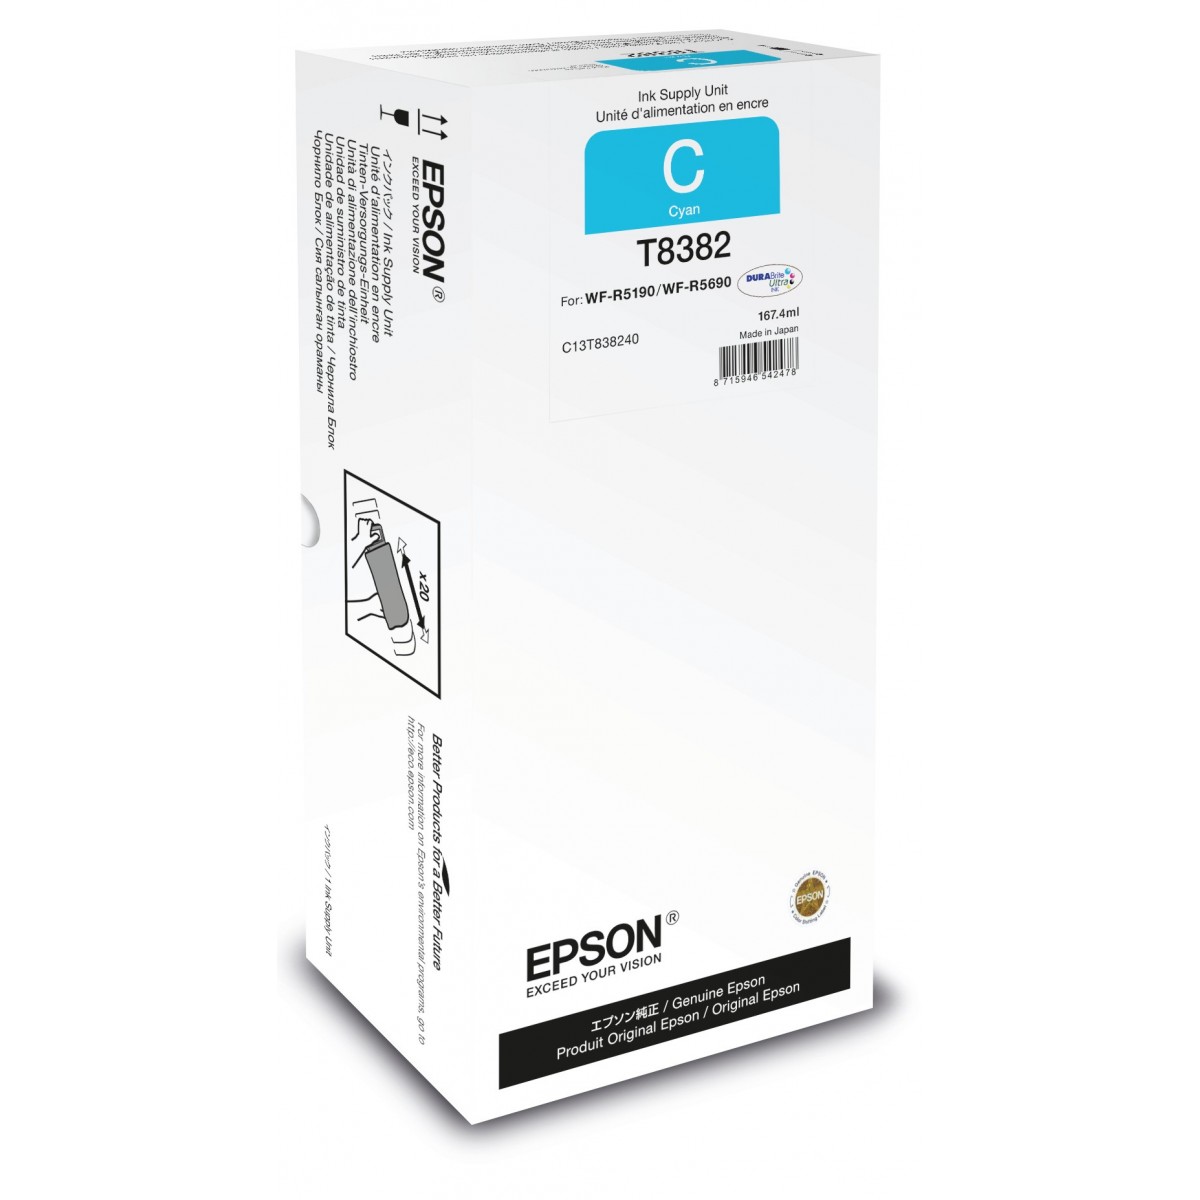 Epson Cyan XL Ink Supply Unit - Original - Cyan - Epson - - WorkForce Pro WF-R5690DTWF - WorkForce Pro WF-R5690 DTWF - WorkForce